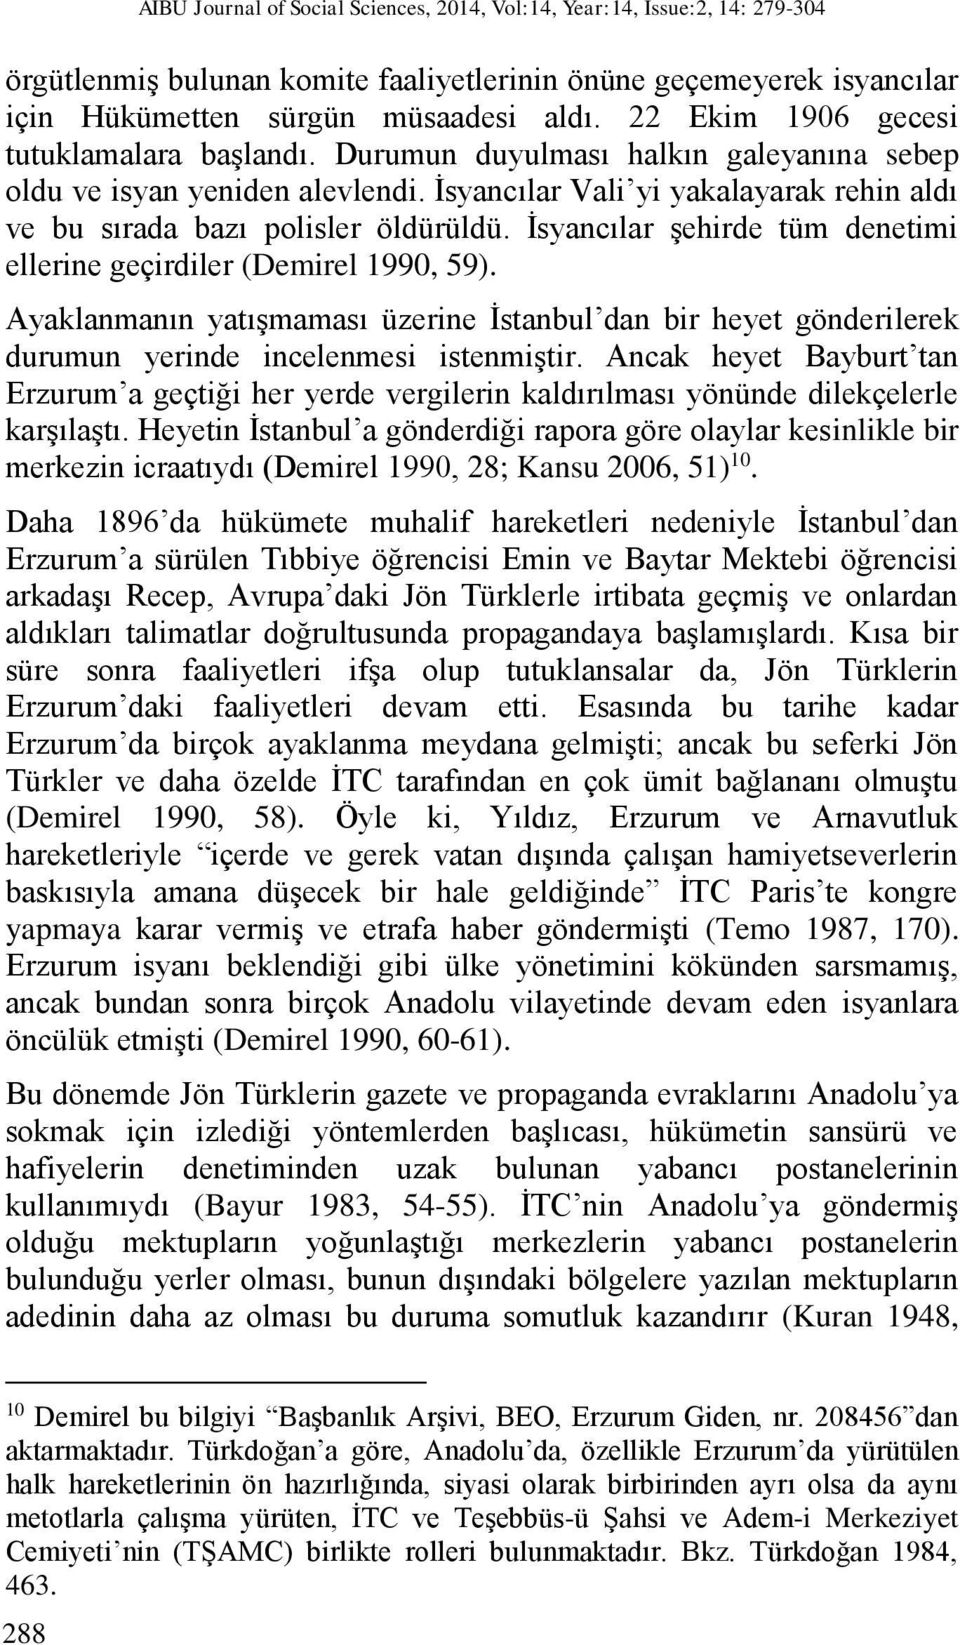 İsyancılar şehirde tüm denetimi ellerine geçirdiler (Demirel 1990, 59). Ayaklanmanın yatışmaması üzerine İstanbul dan bir heyet gönderilerek durumun yerinde incelenmesi istenmiştir.